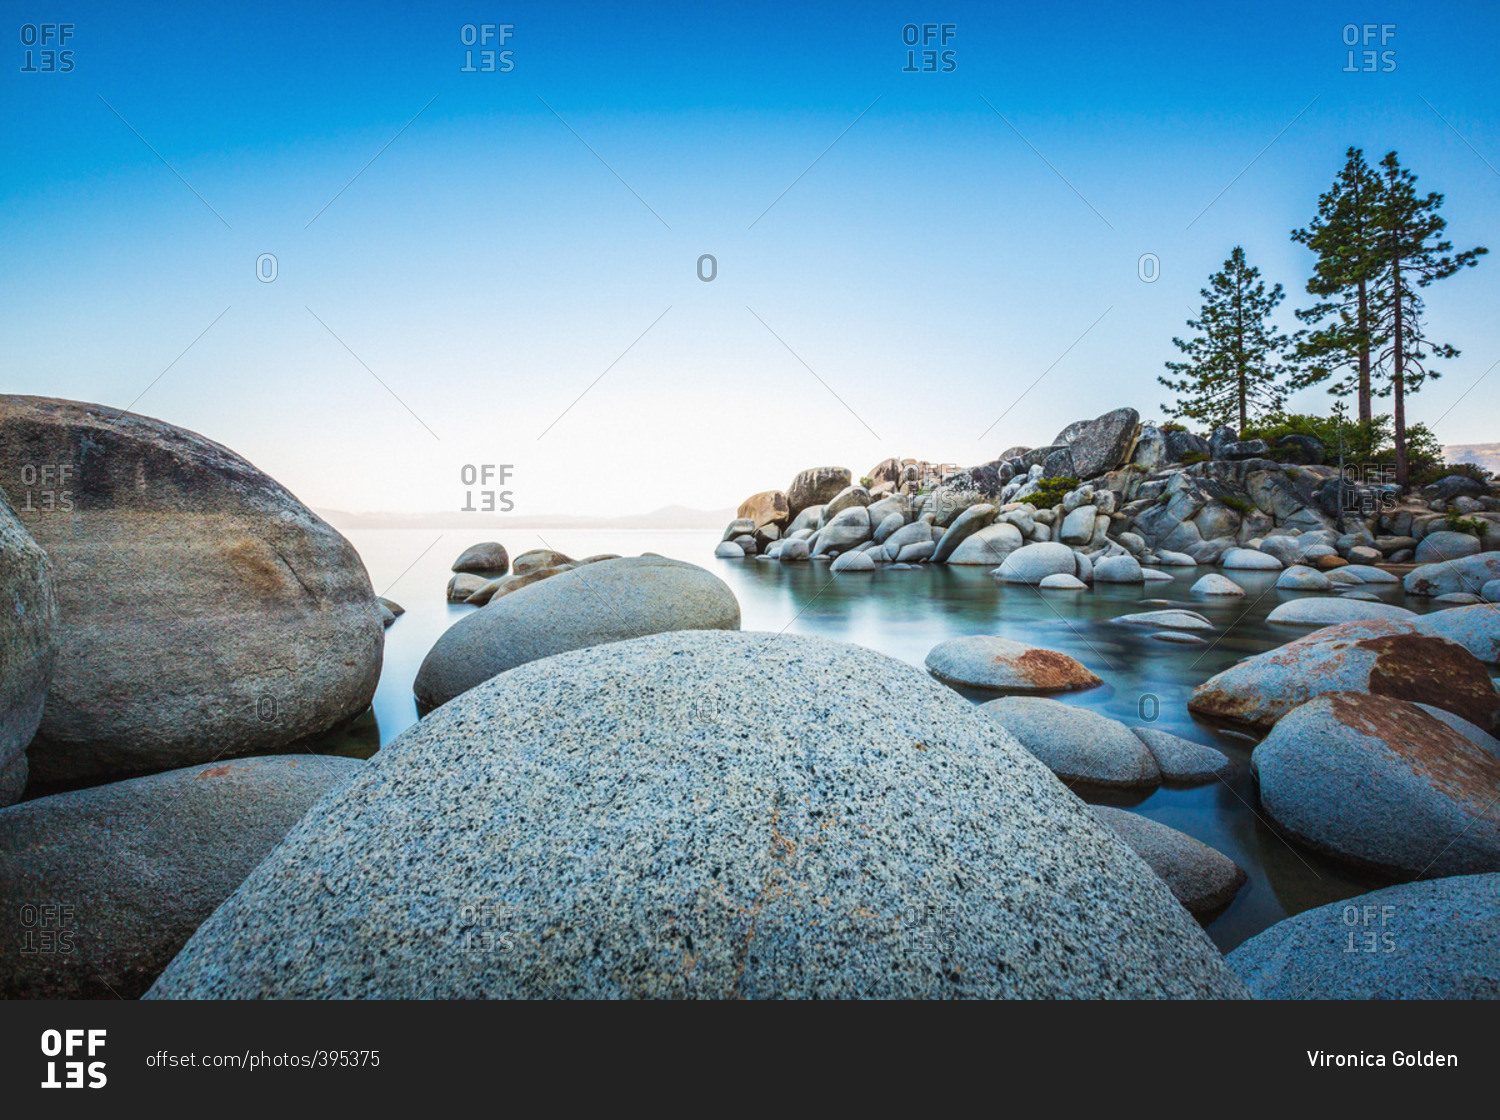 A rock strewn shoreline